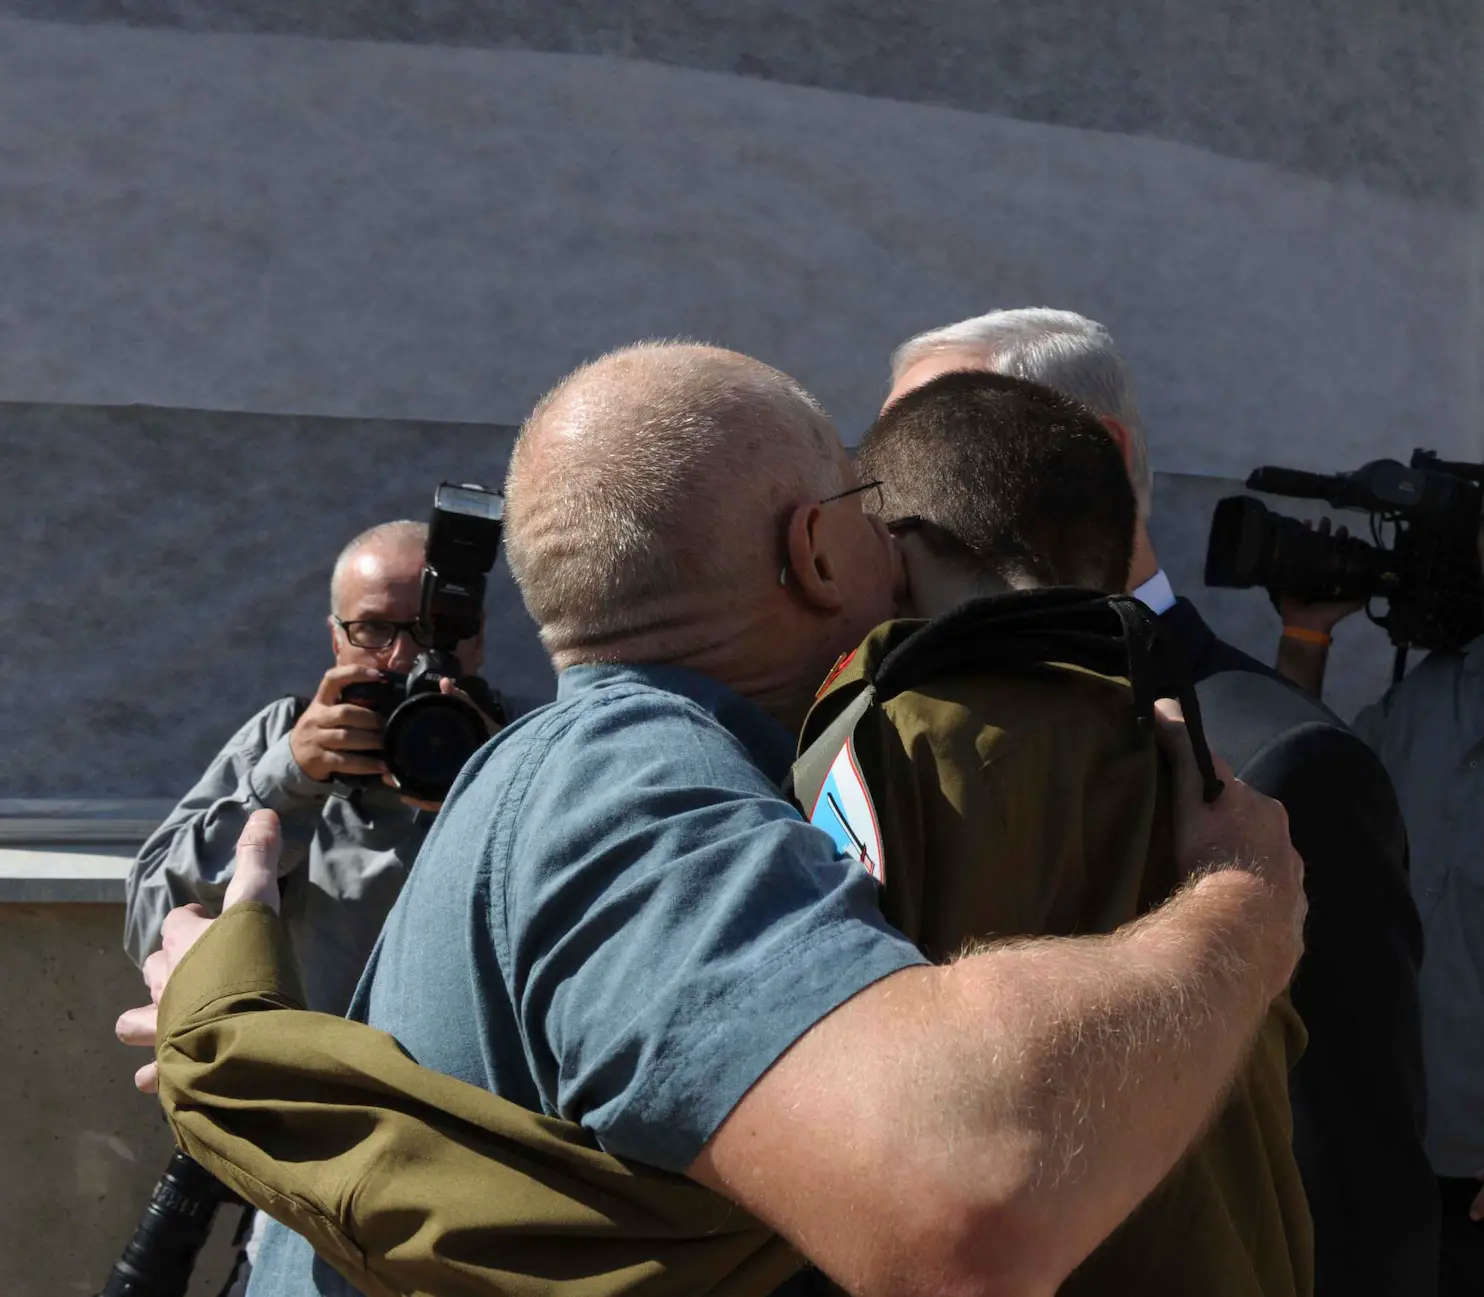 Gilad Shalit released in prisoner swap